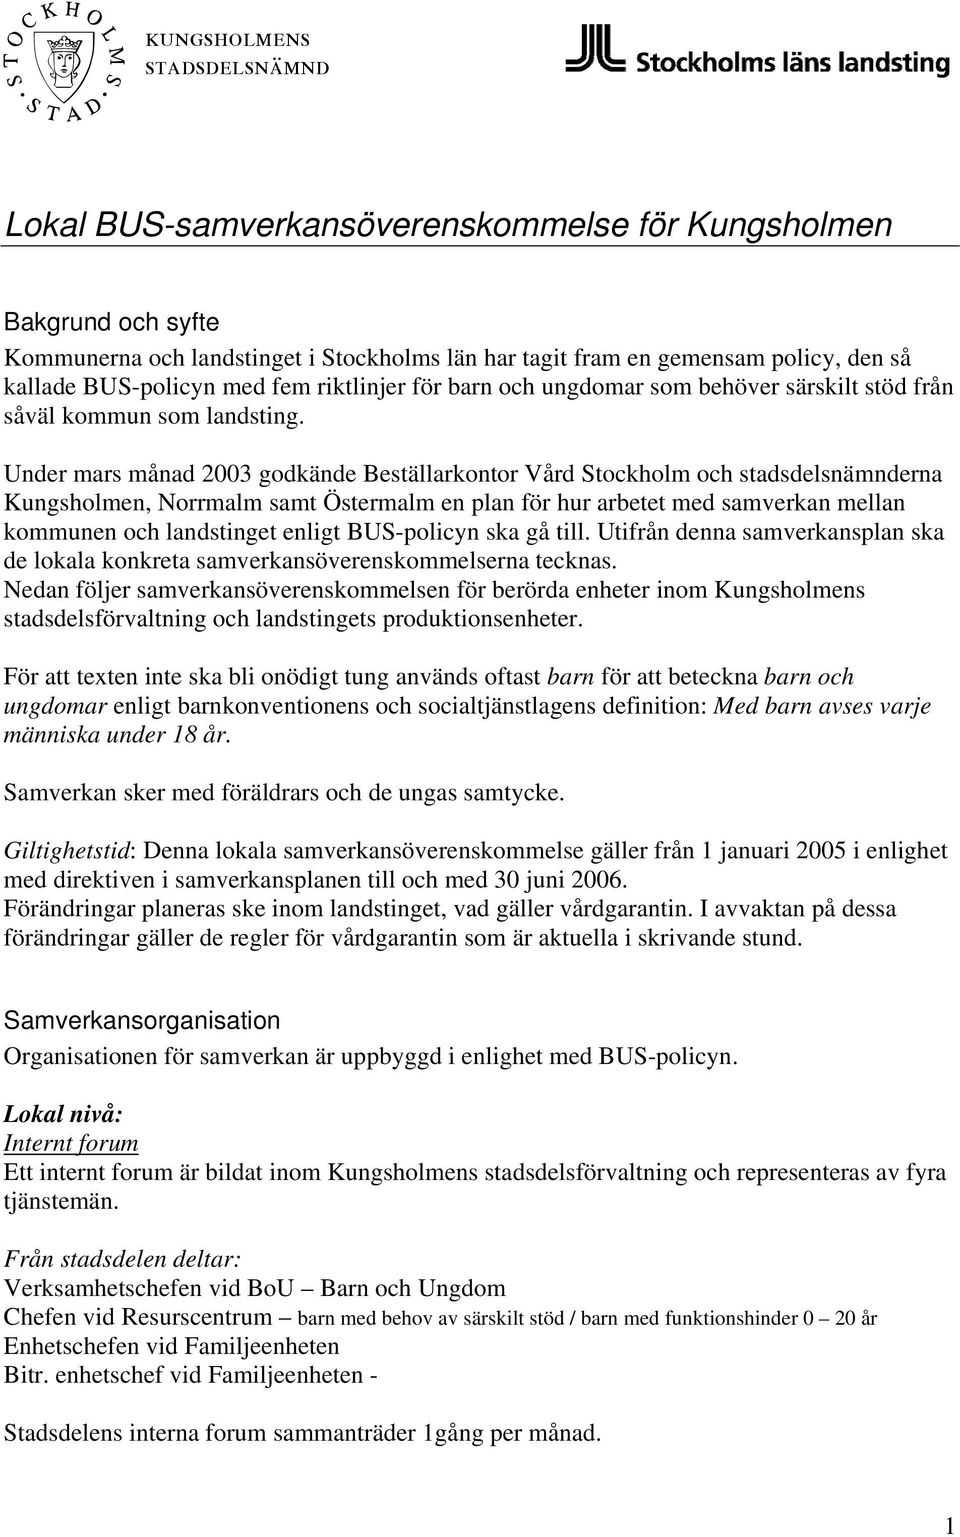 Under mars månad 2003 godkände Beställarkontor Vård Stockholm och stadsdelsnämnderna Kungsholmen, Norrmalm samt Östermalm en plan för hur arbetet med samverkan mellan kommunen och landstinget enligt